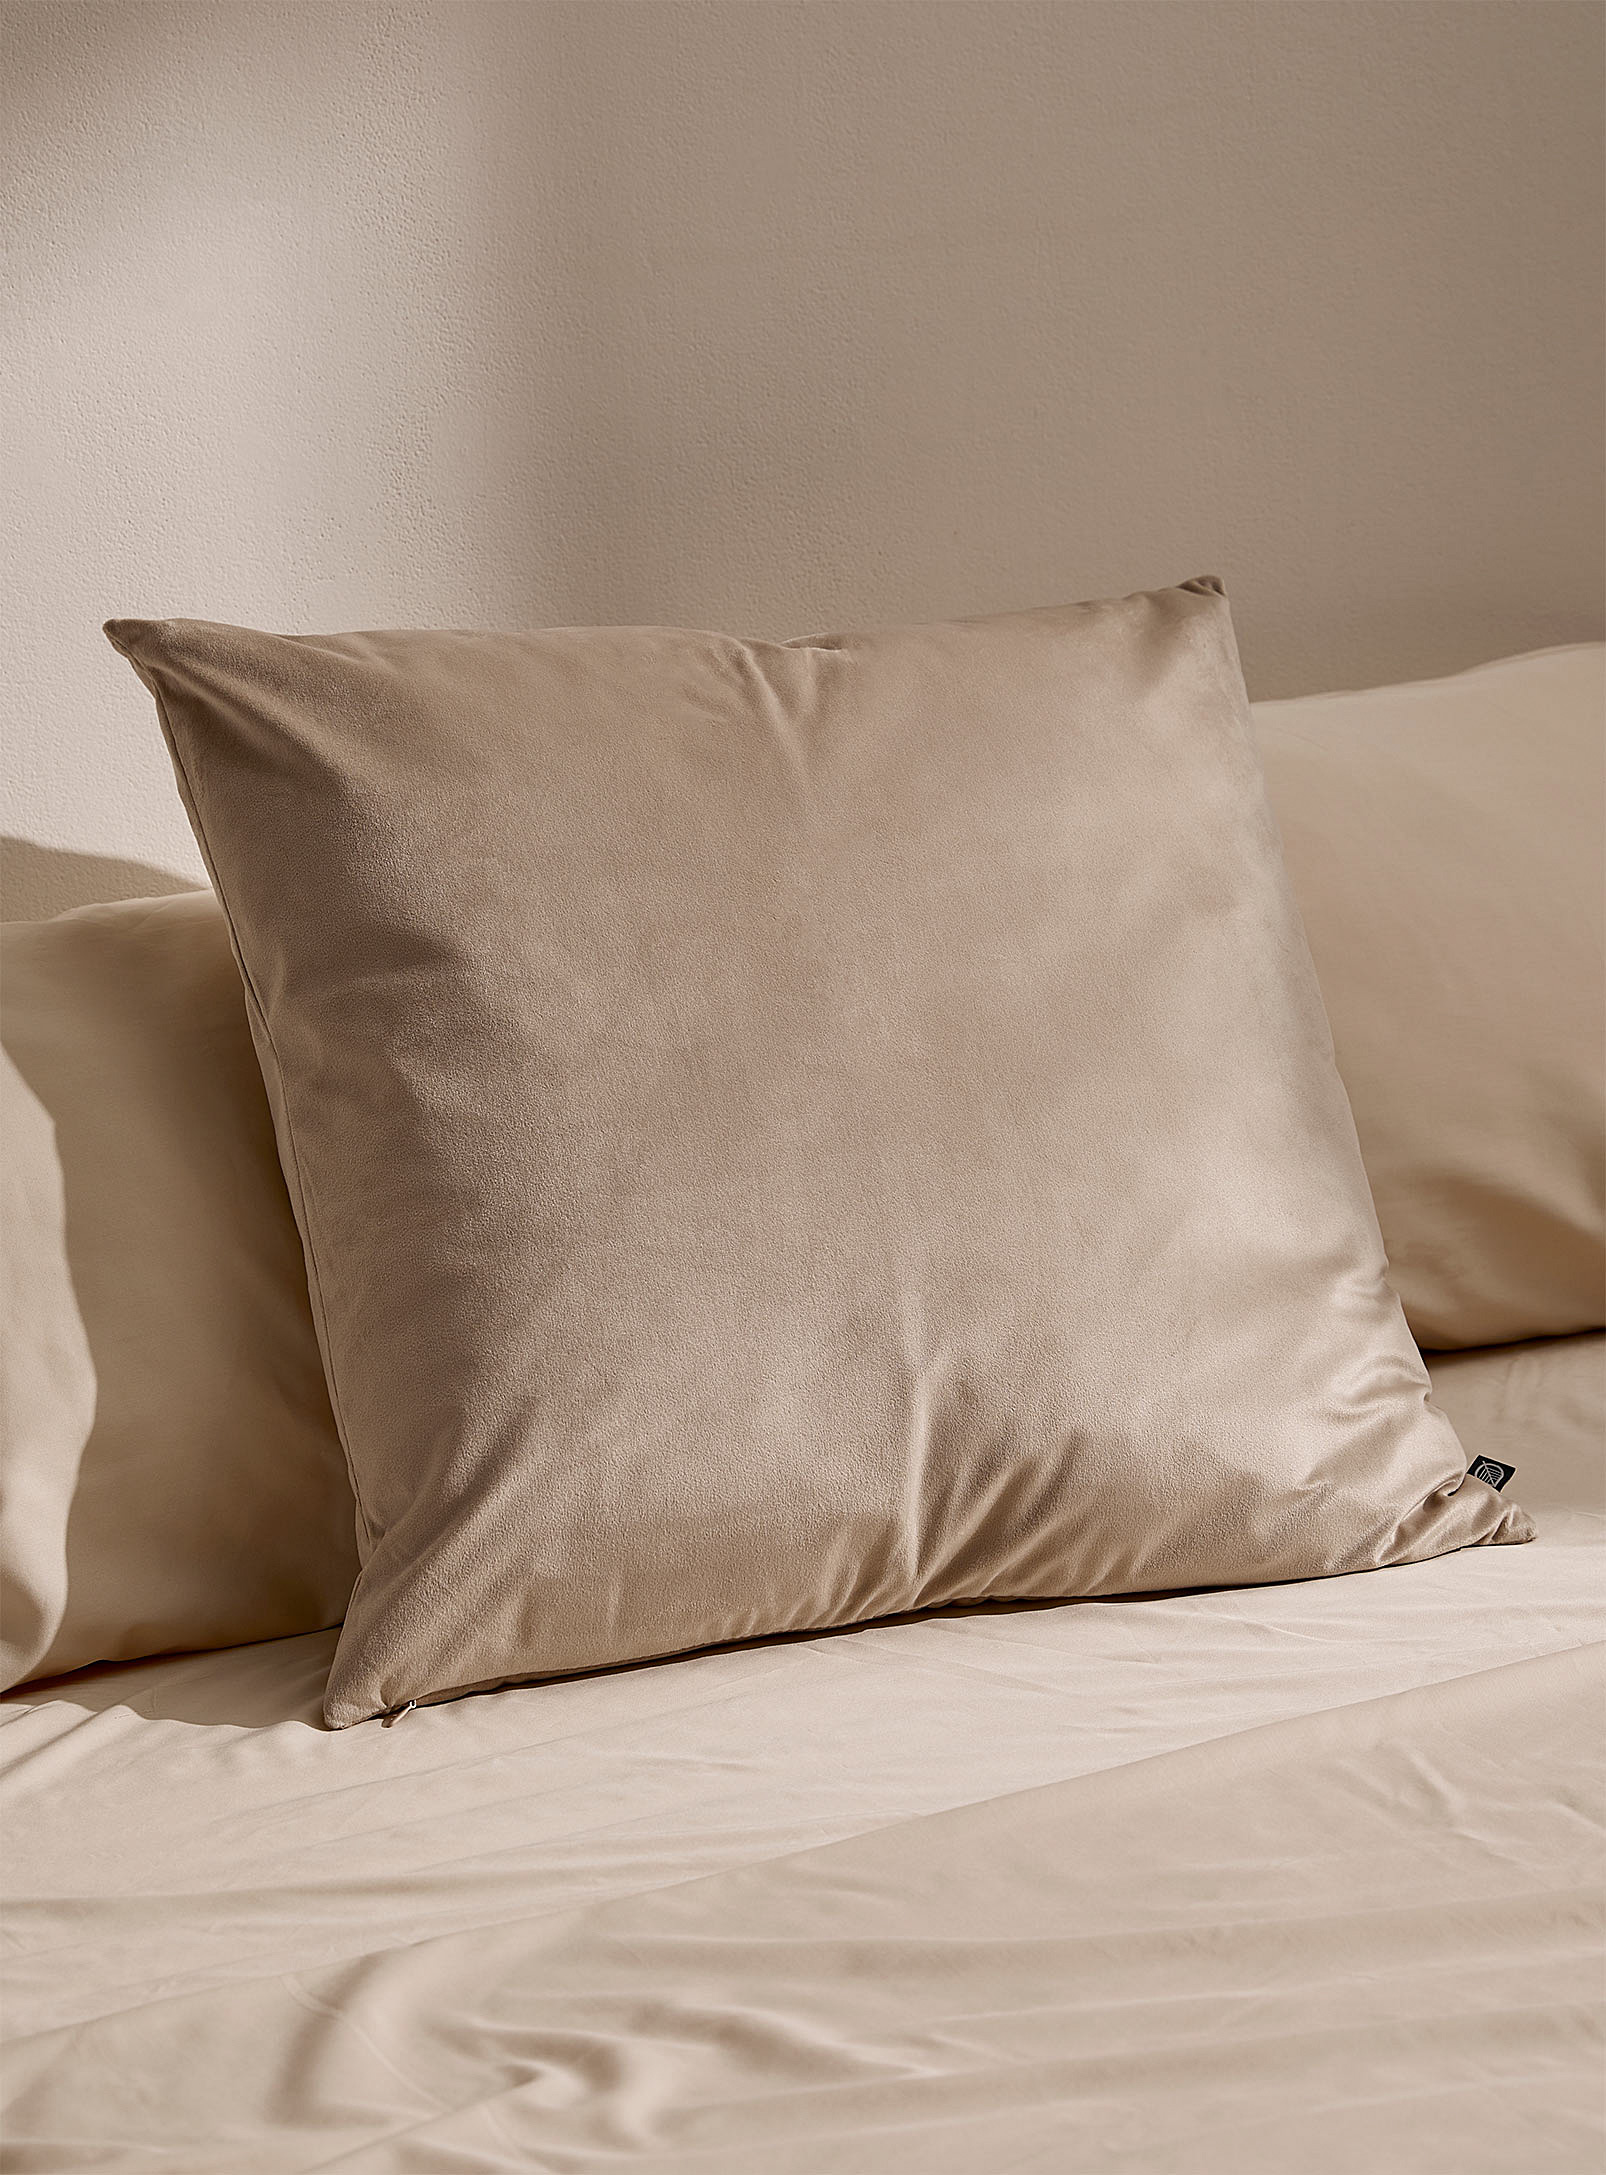 Simons Maison Opulent Velvet Cushion 60 X 60 Cm In Cream Beige